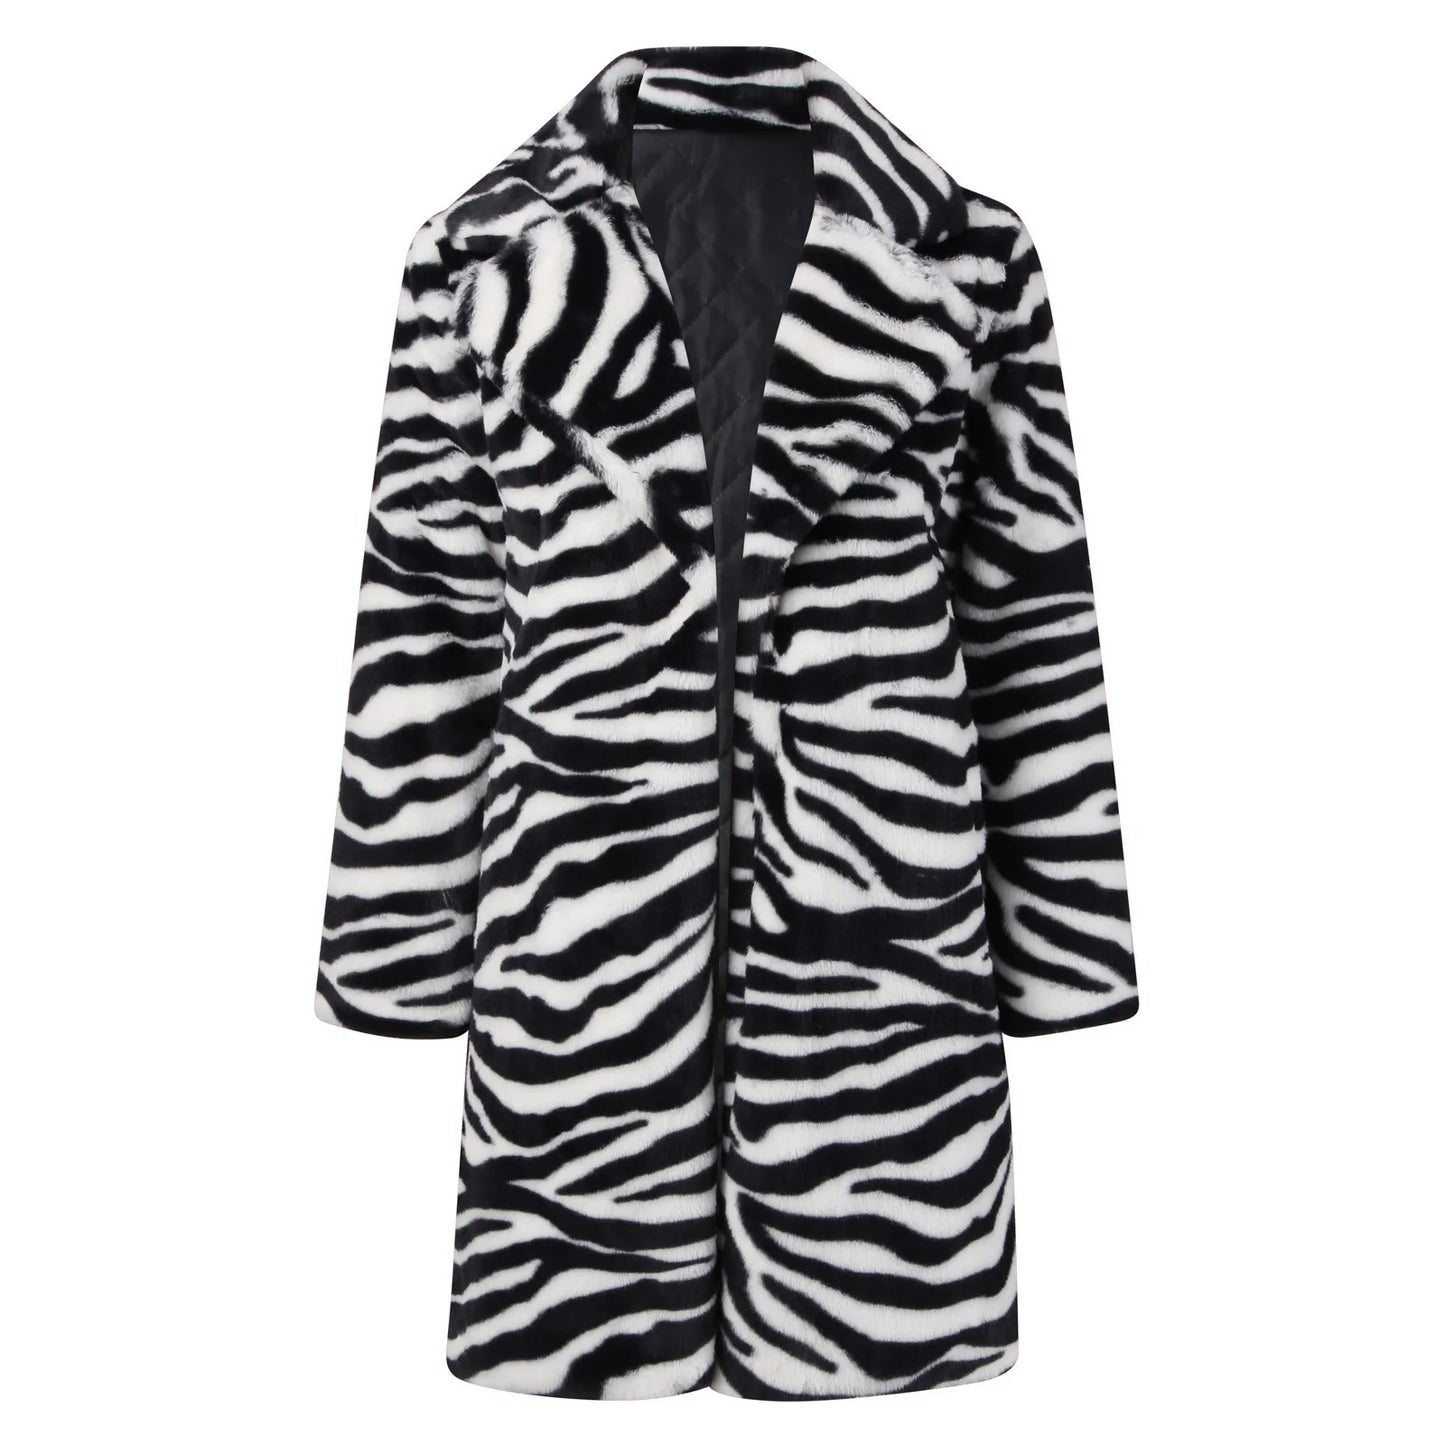 Zebra-Stripe Lapel Coat Casual/Women's Winter Jacket Thicken Warm Fleece Jacket